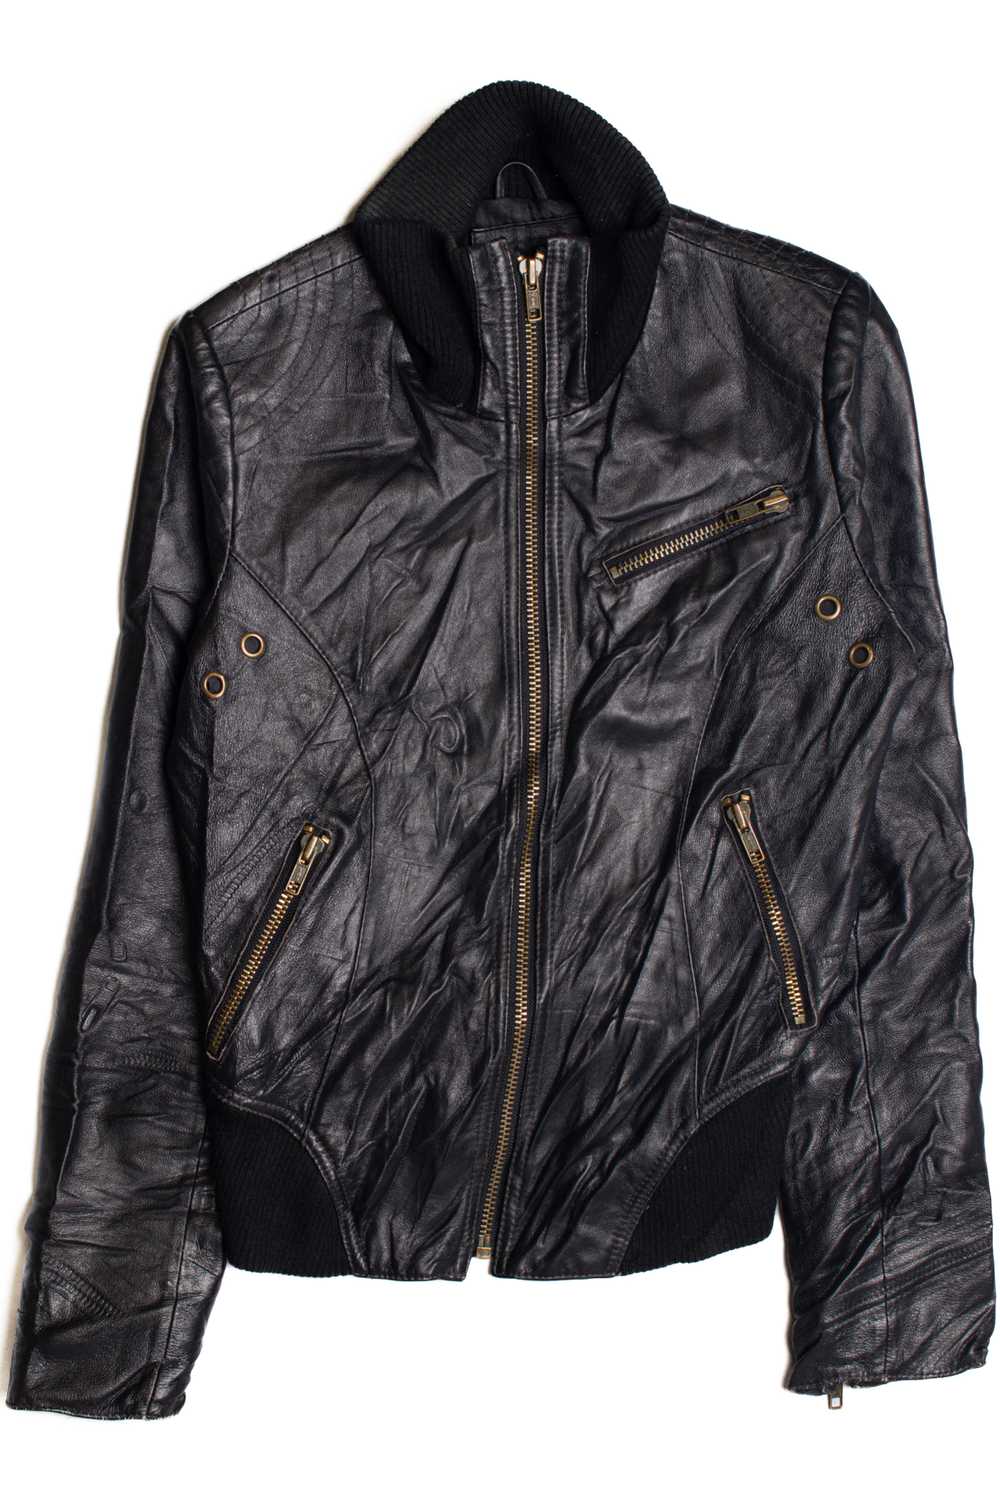 Black Leather Motorcycle Jacket 374 - image 1